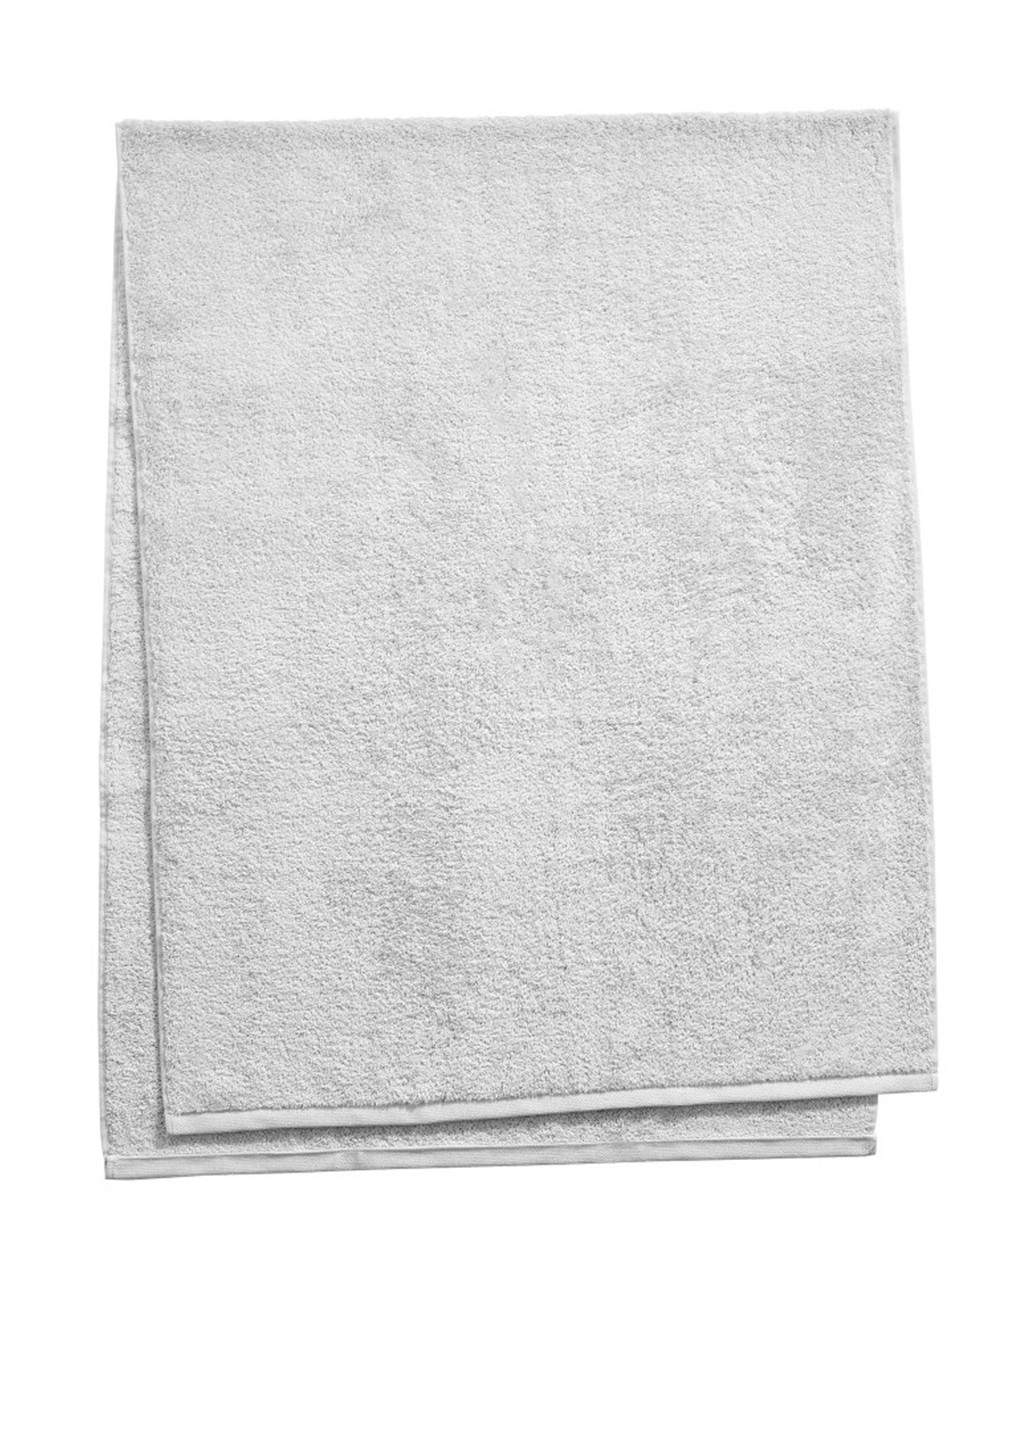 Butlers полотенце для сауны, 80х200 см однотонный светло-серый производство - Португалия